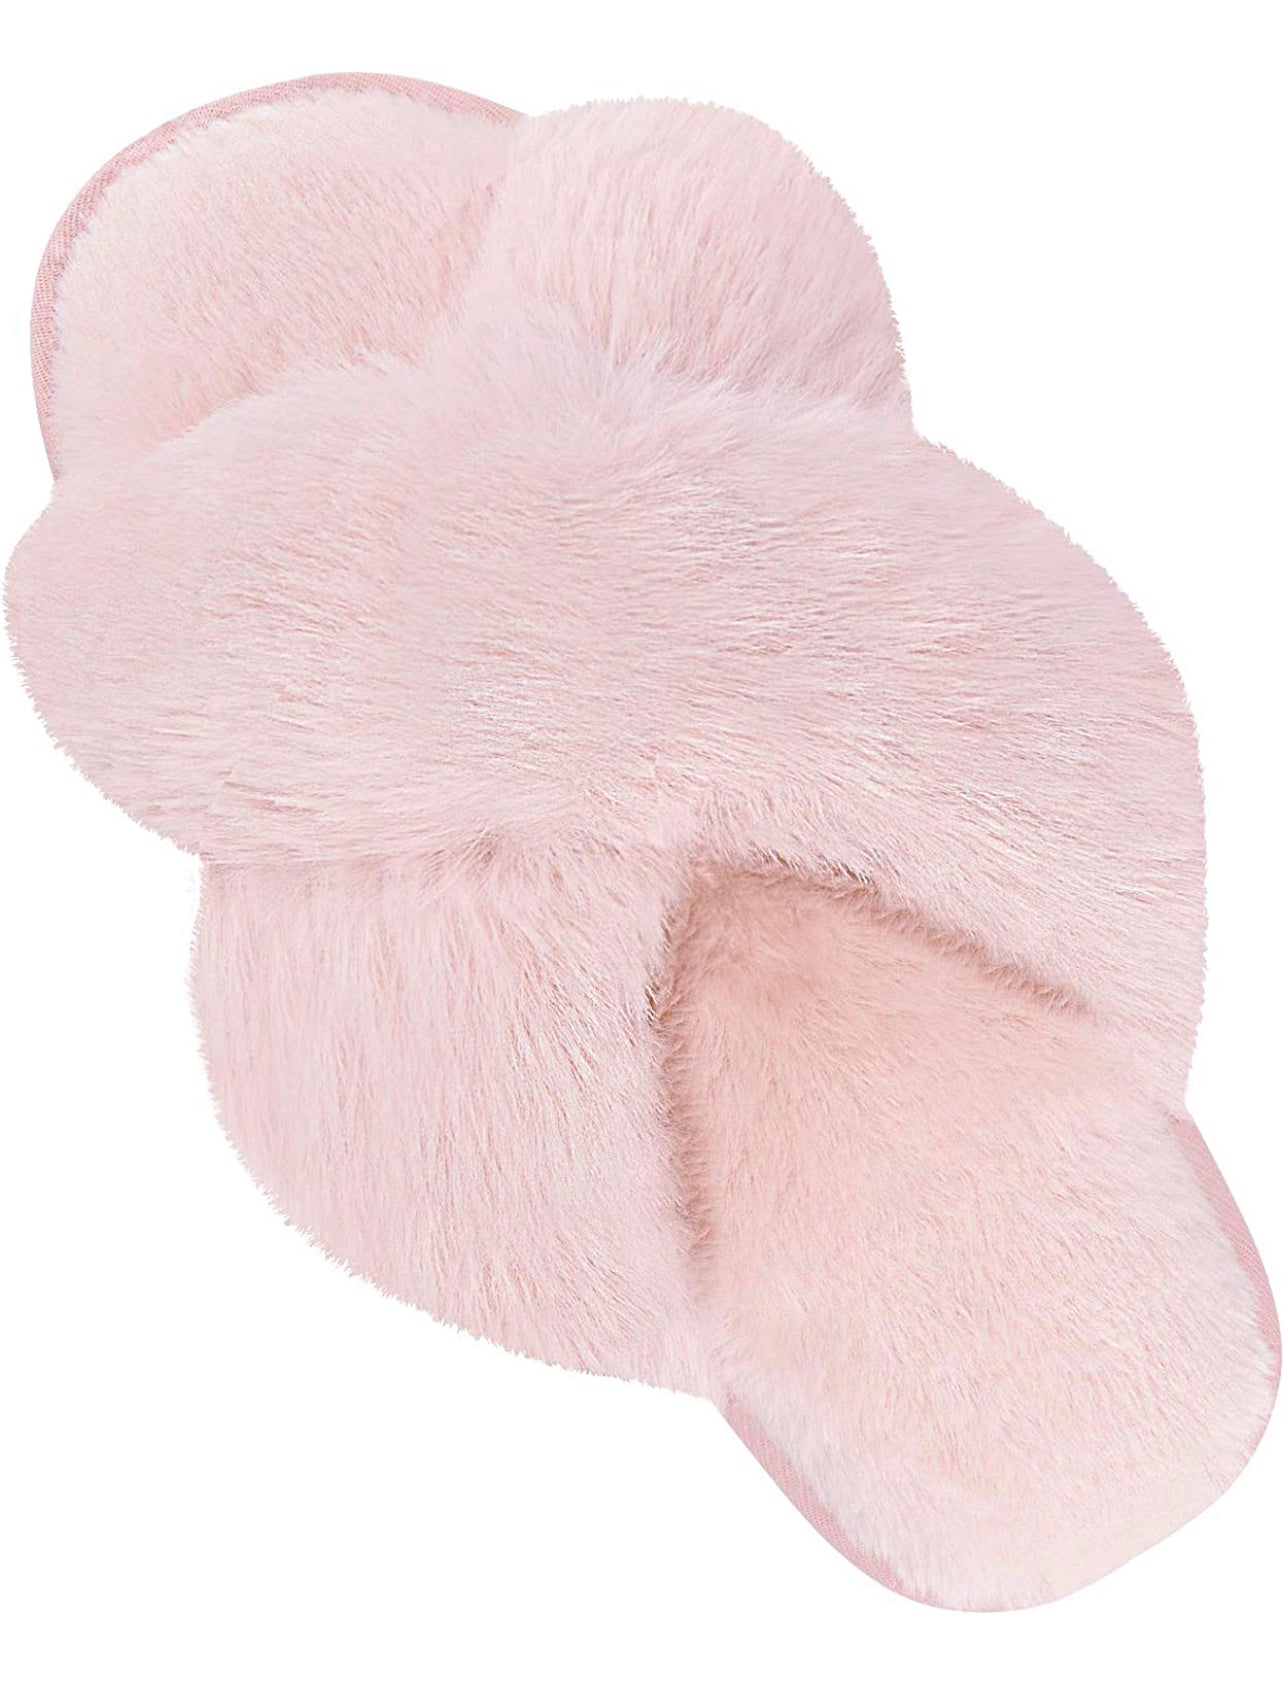 Fuzzy Slippers